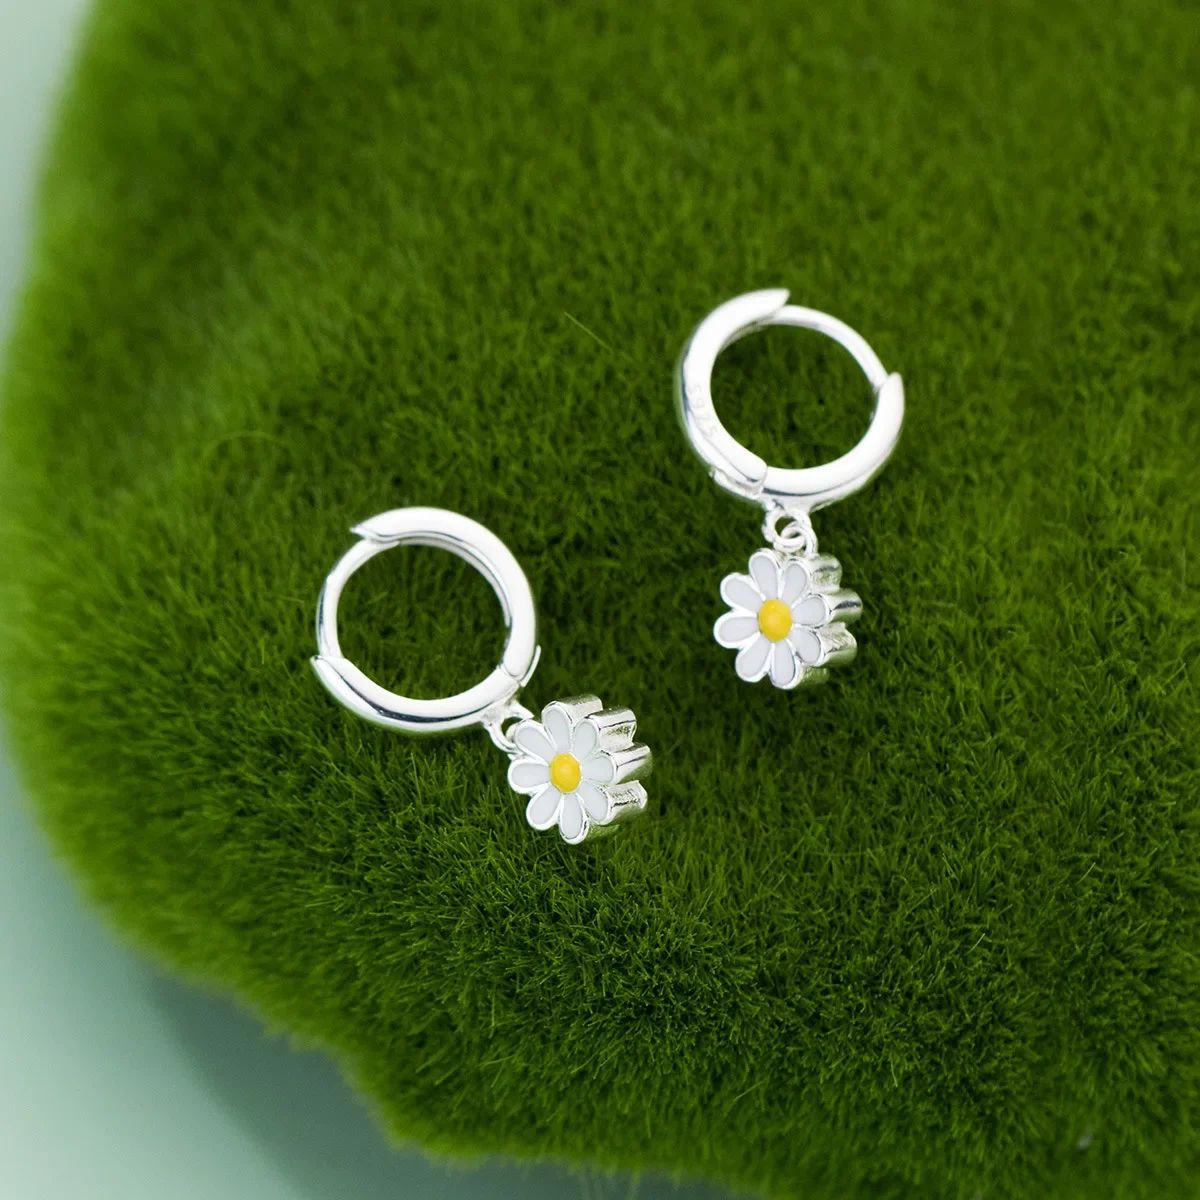 Metal Color:Daisy earrings